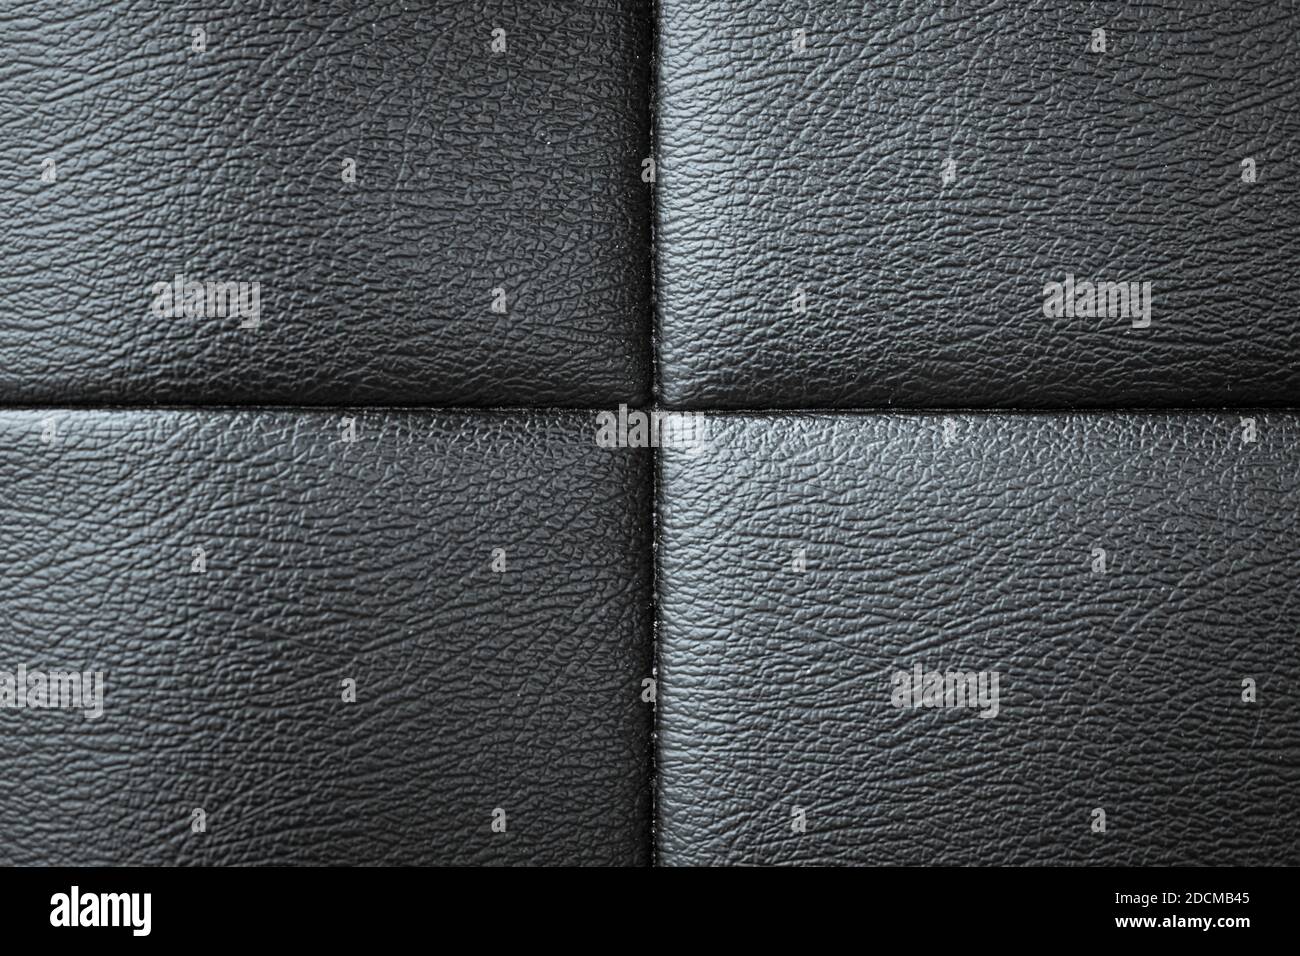 La textura de cuero del sofá negro se puede utilizar como fondo Foto de stock